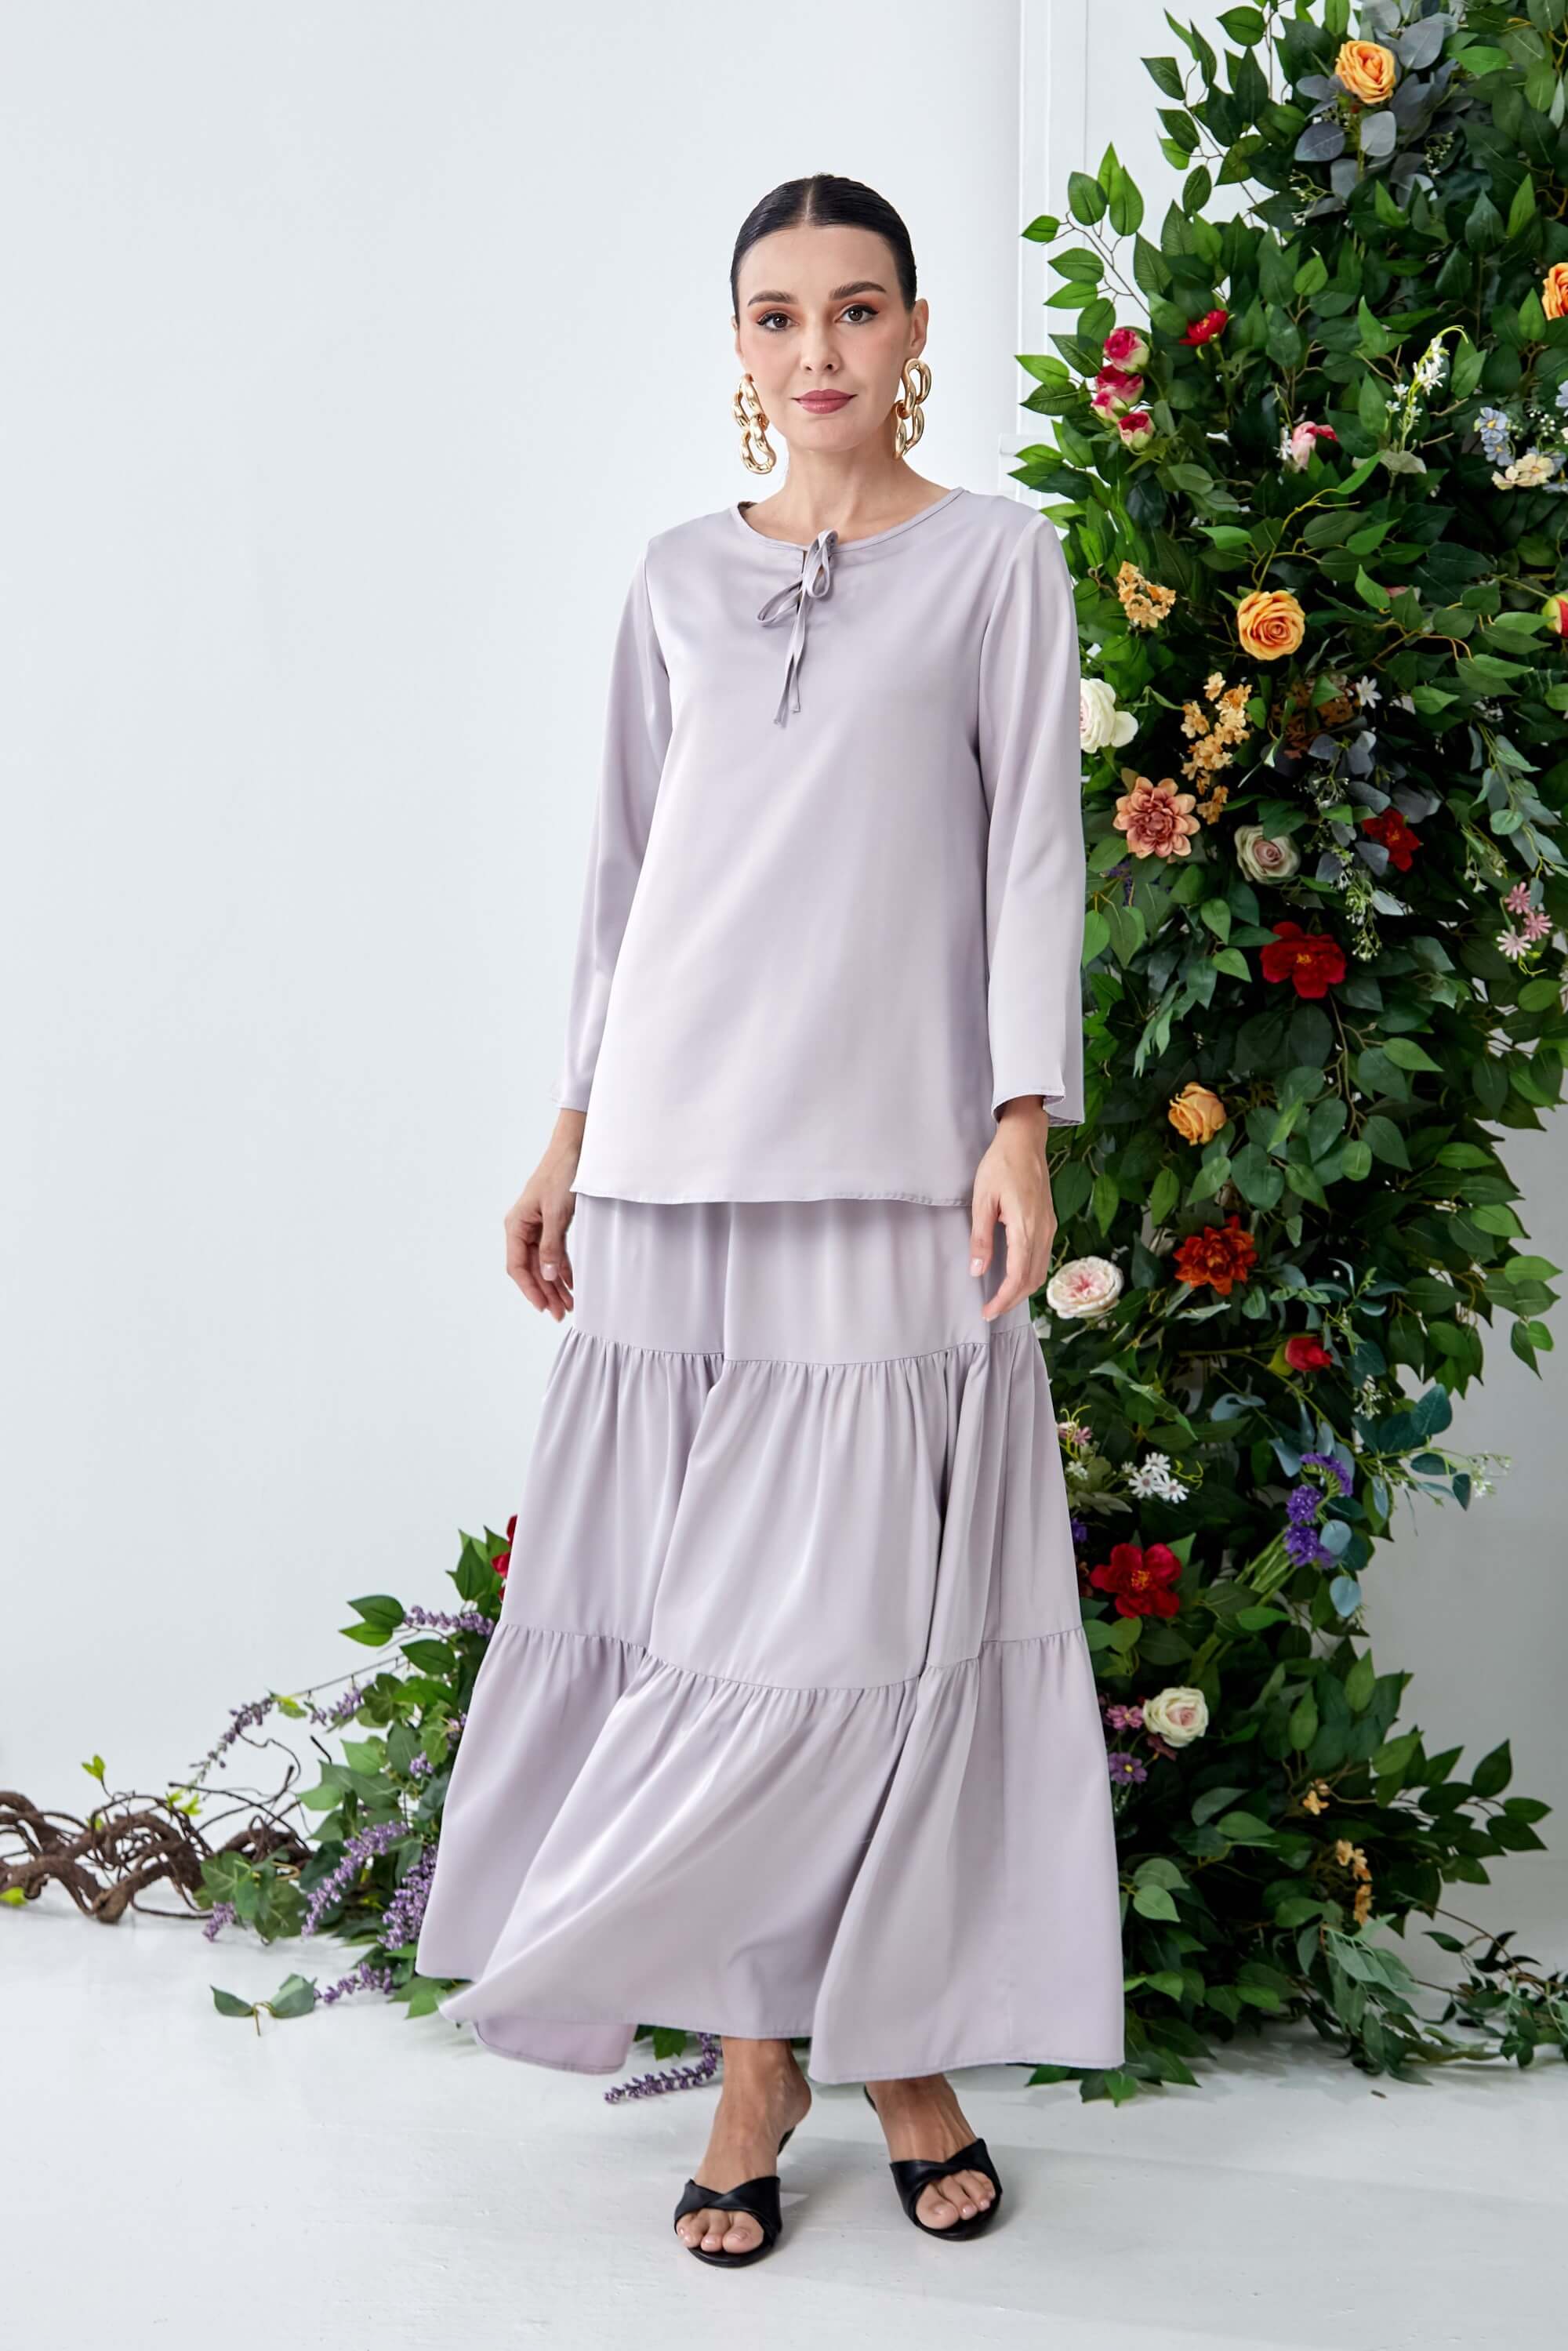 Chenta Light Grey Blouse + Tier Skirt (4)